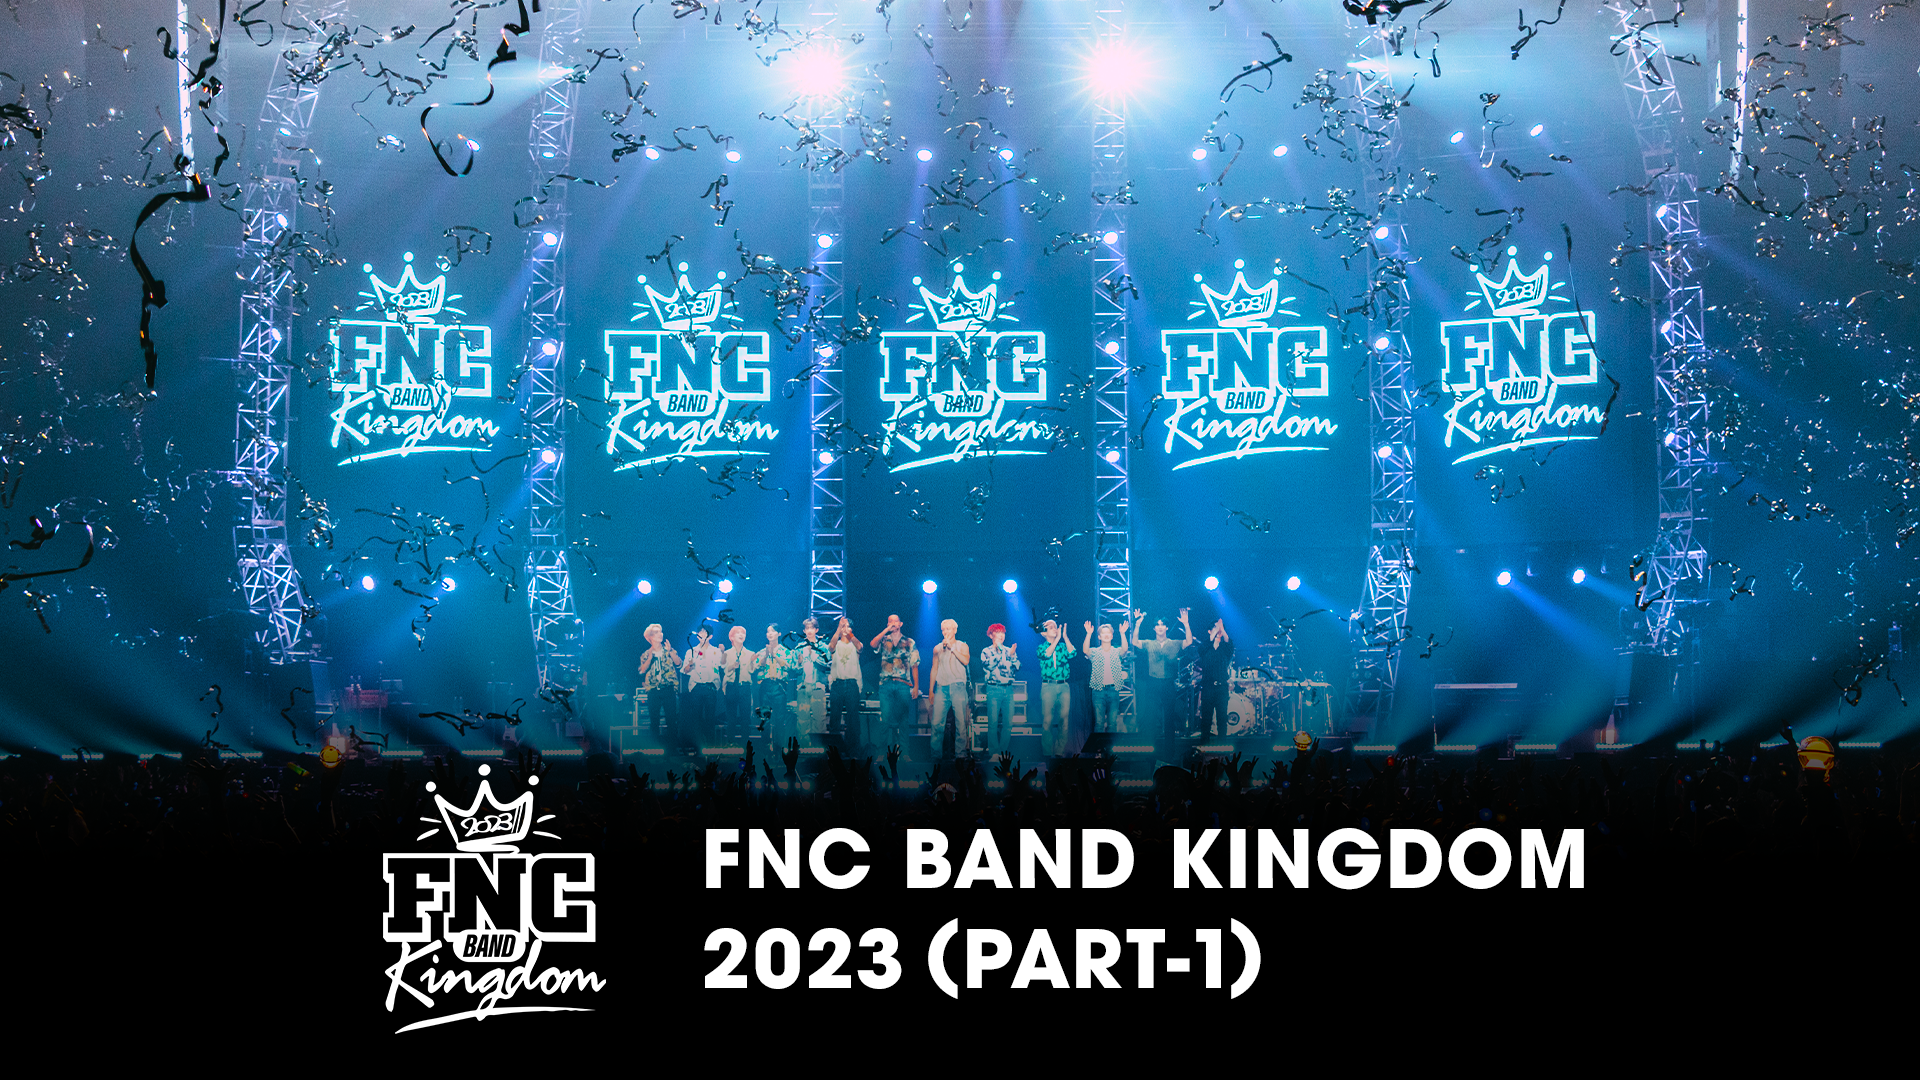 FNC BAND KINGDOM 2023 PART-1(音楽・アイドル / 2023) - 動画配信 | U 